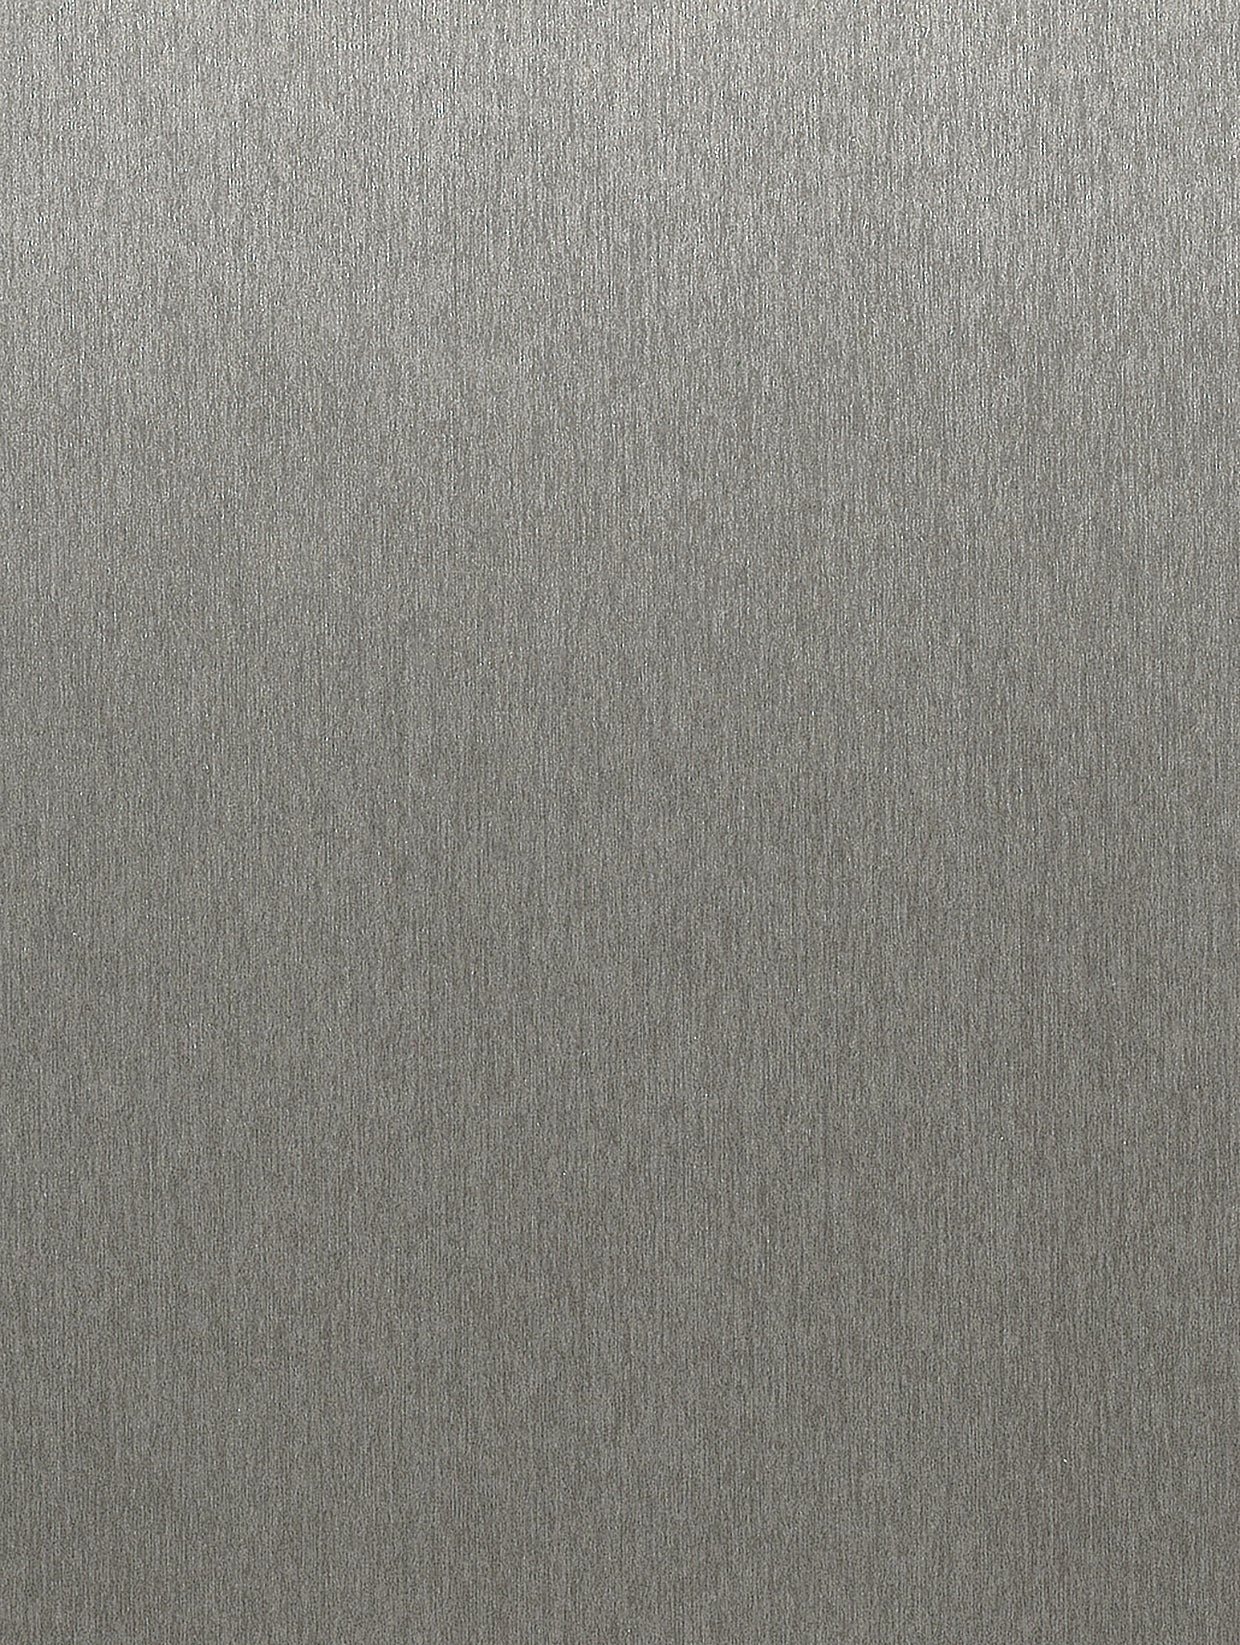 Staal geborsteld | Metalen decor geborstelde structuur meubelfolie zelfklevend behang vinylfolie voor meubelwandplank (100 x 122 cm)